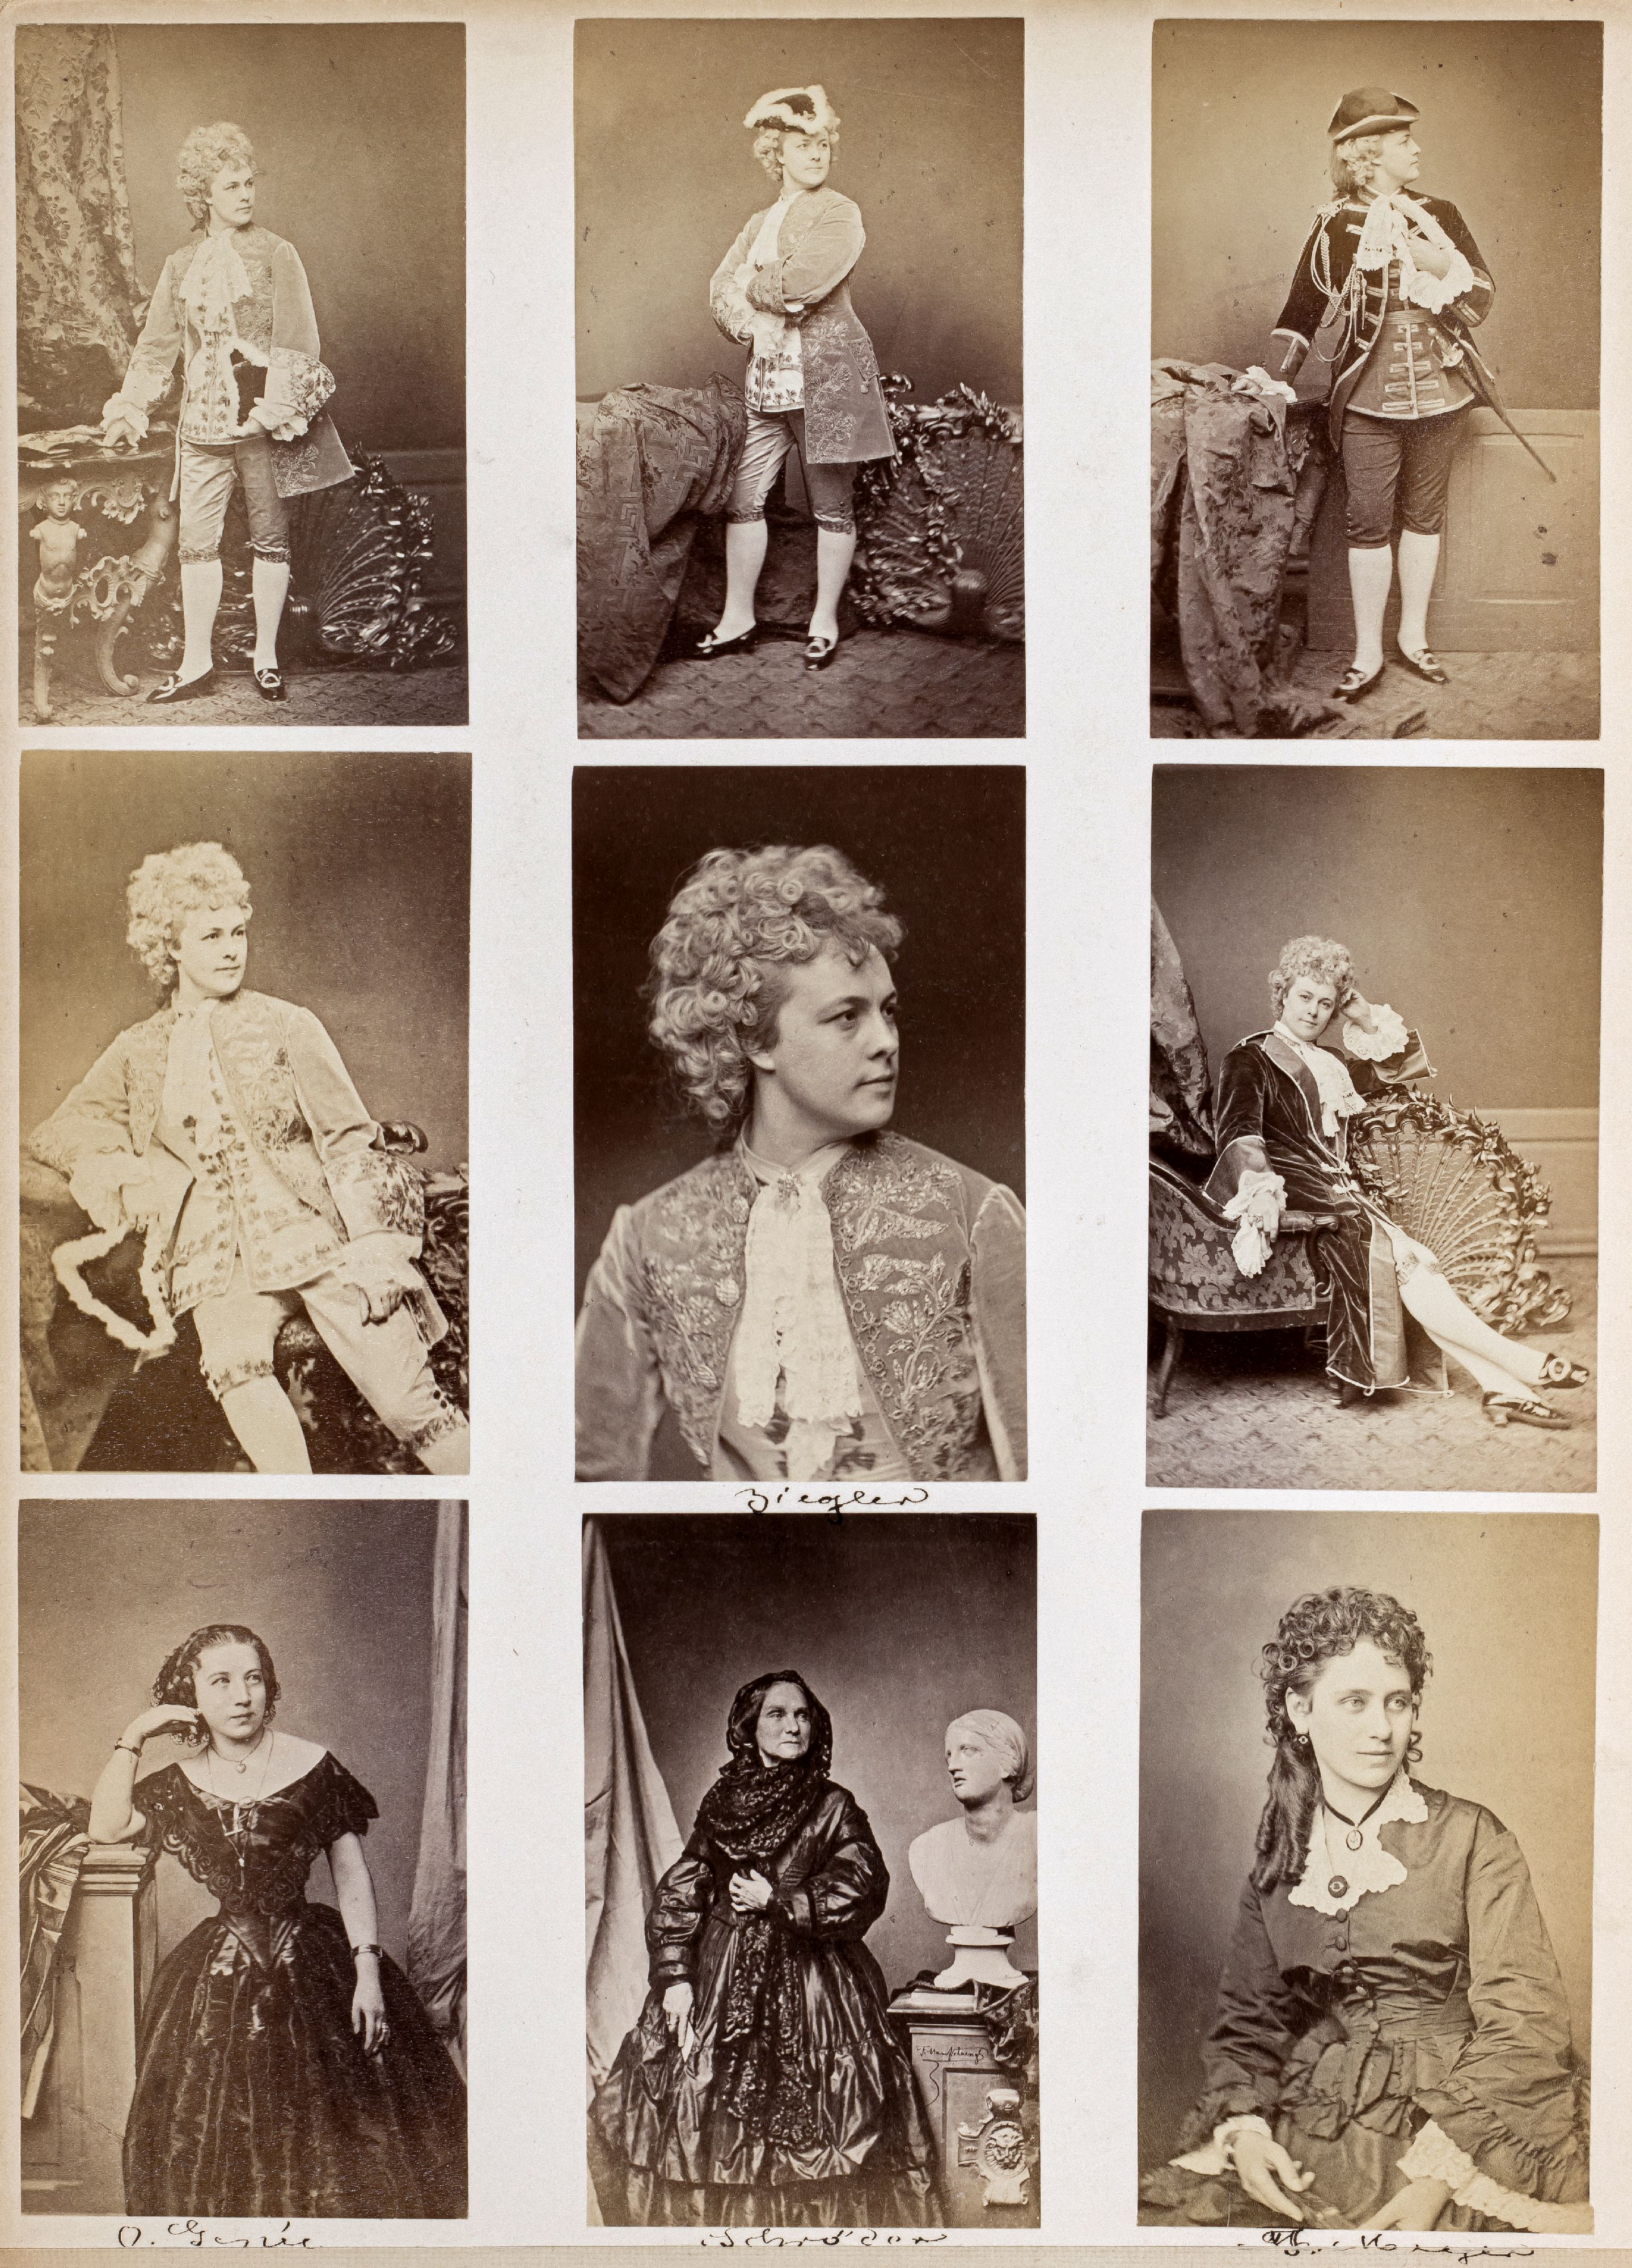 FOTOGRAFIE | Hanfstaengl, Franz | 1807 Baiernrain bei Tölz - 1877 München - Bild 25 aus 25